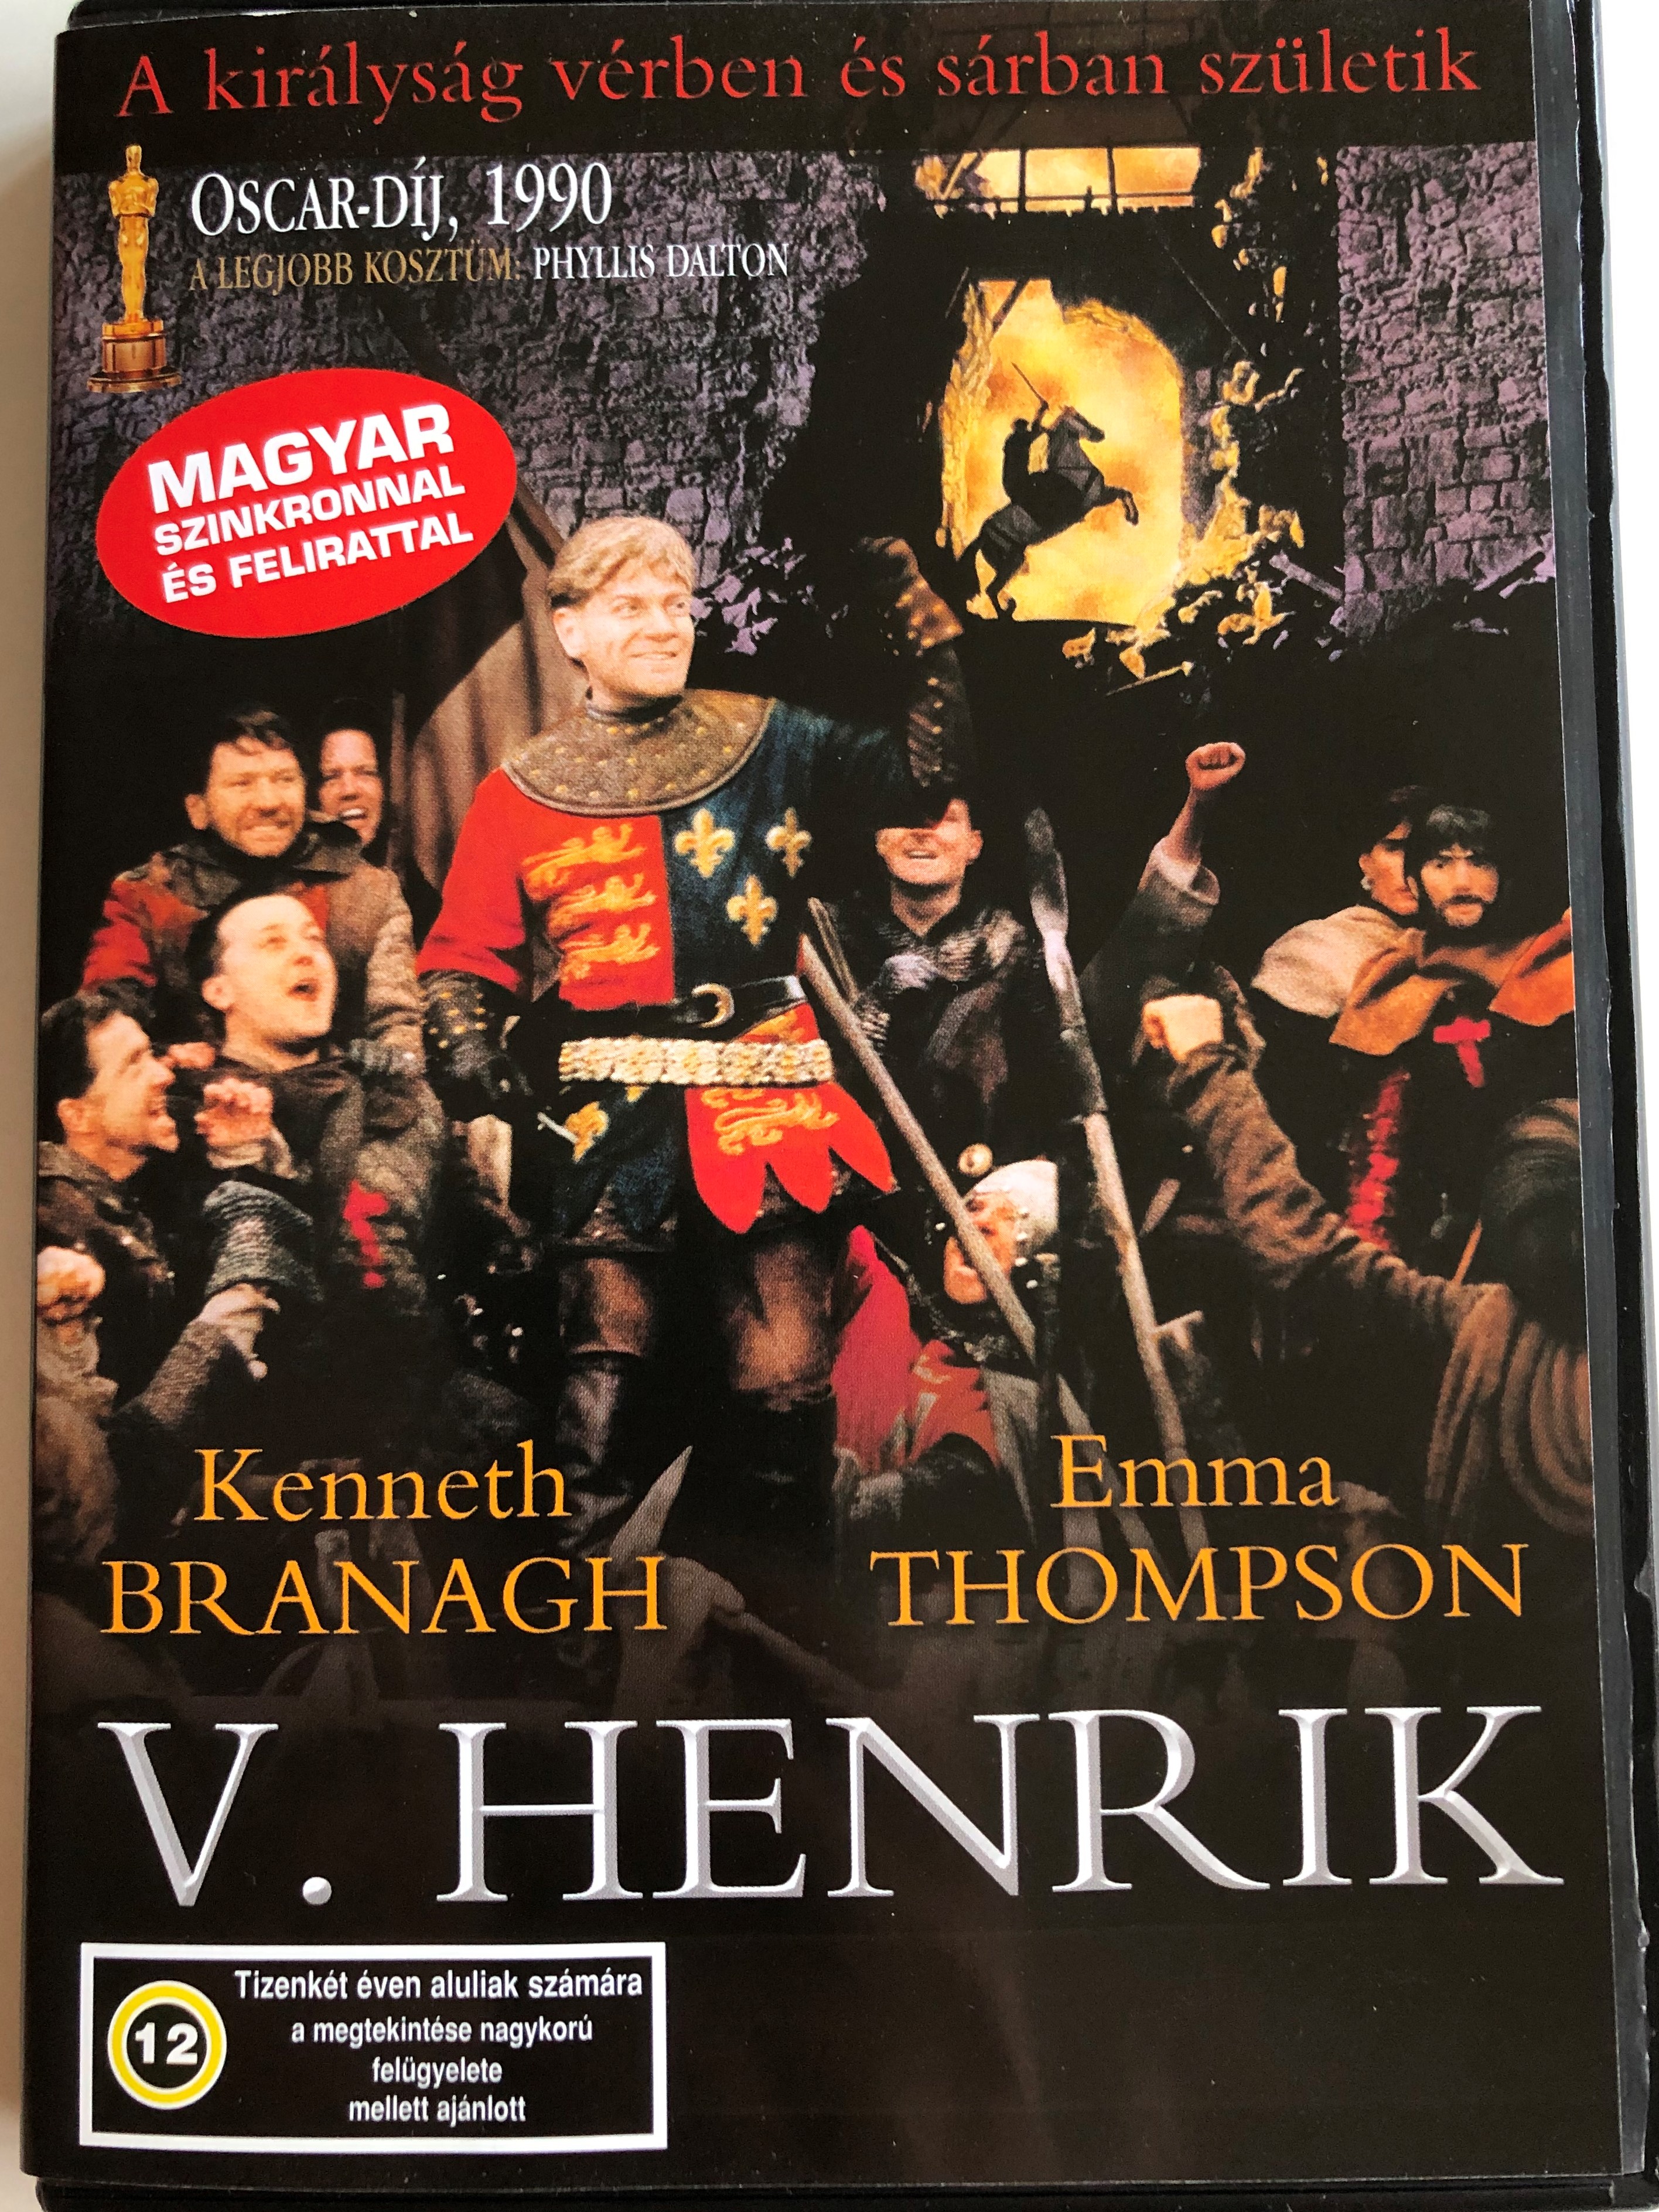 henry-v-dvd-1989-v.-henrik-directed-by-kenneth-branagh-starring-kenneth-branagh-paul-scofield-derek-jacobi-ian-holm-emma-thompson-based-on-shakespeare-s-play-1-.jpg